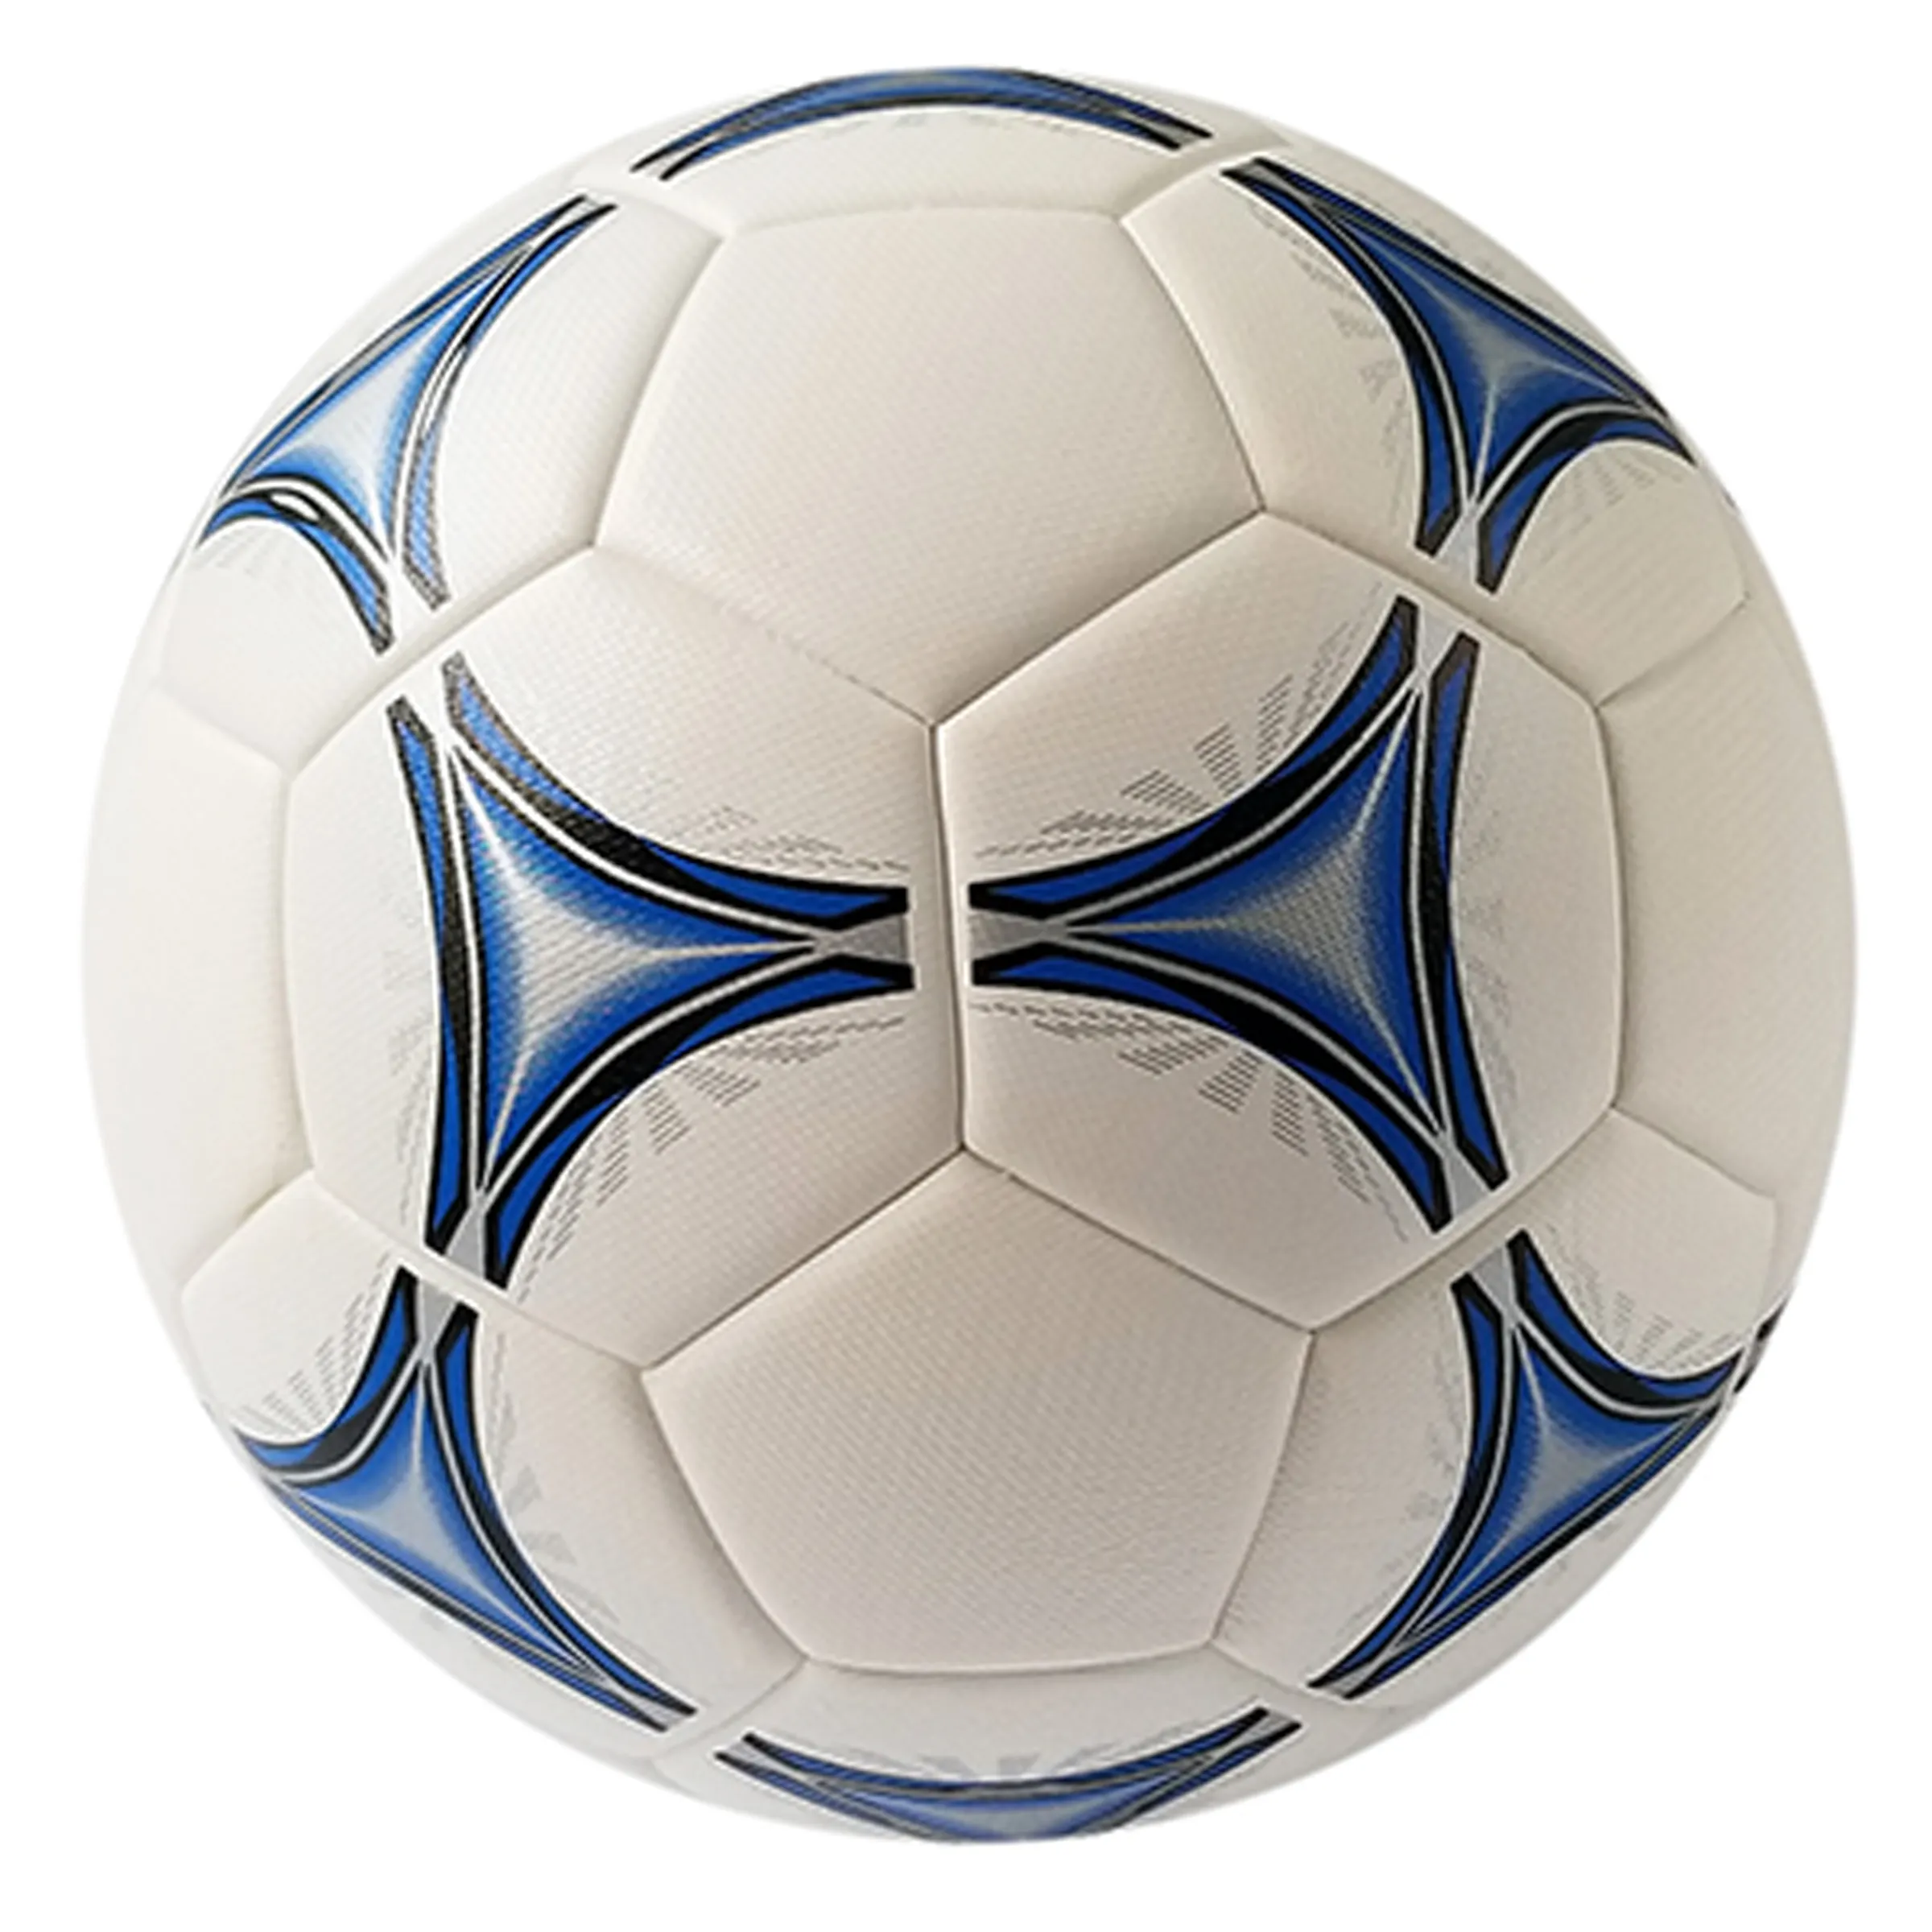 كرة قدم عالية الجودة مخصصة من الجلد الصناعي PU مطبوعة وذات شعار مخصص متوافقة مع الرياضة متوافقة مع الحرارة بحجم 5